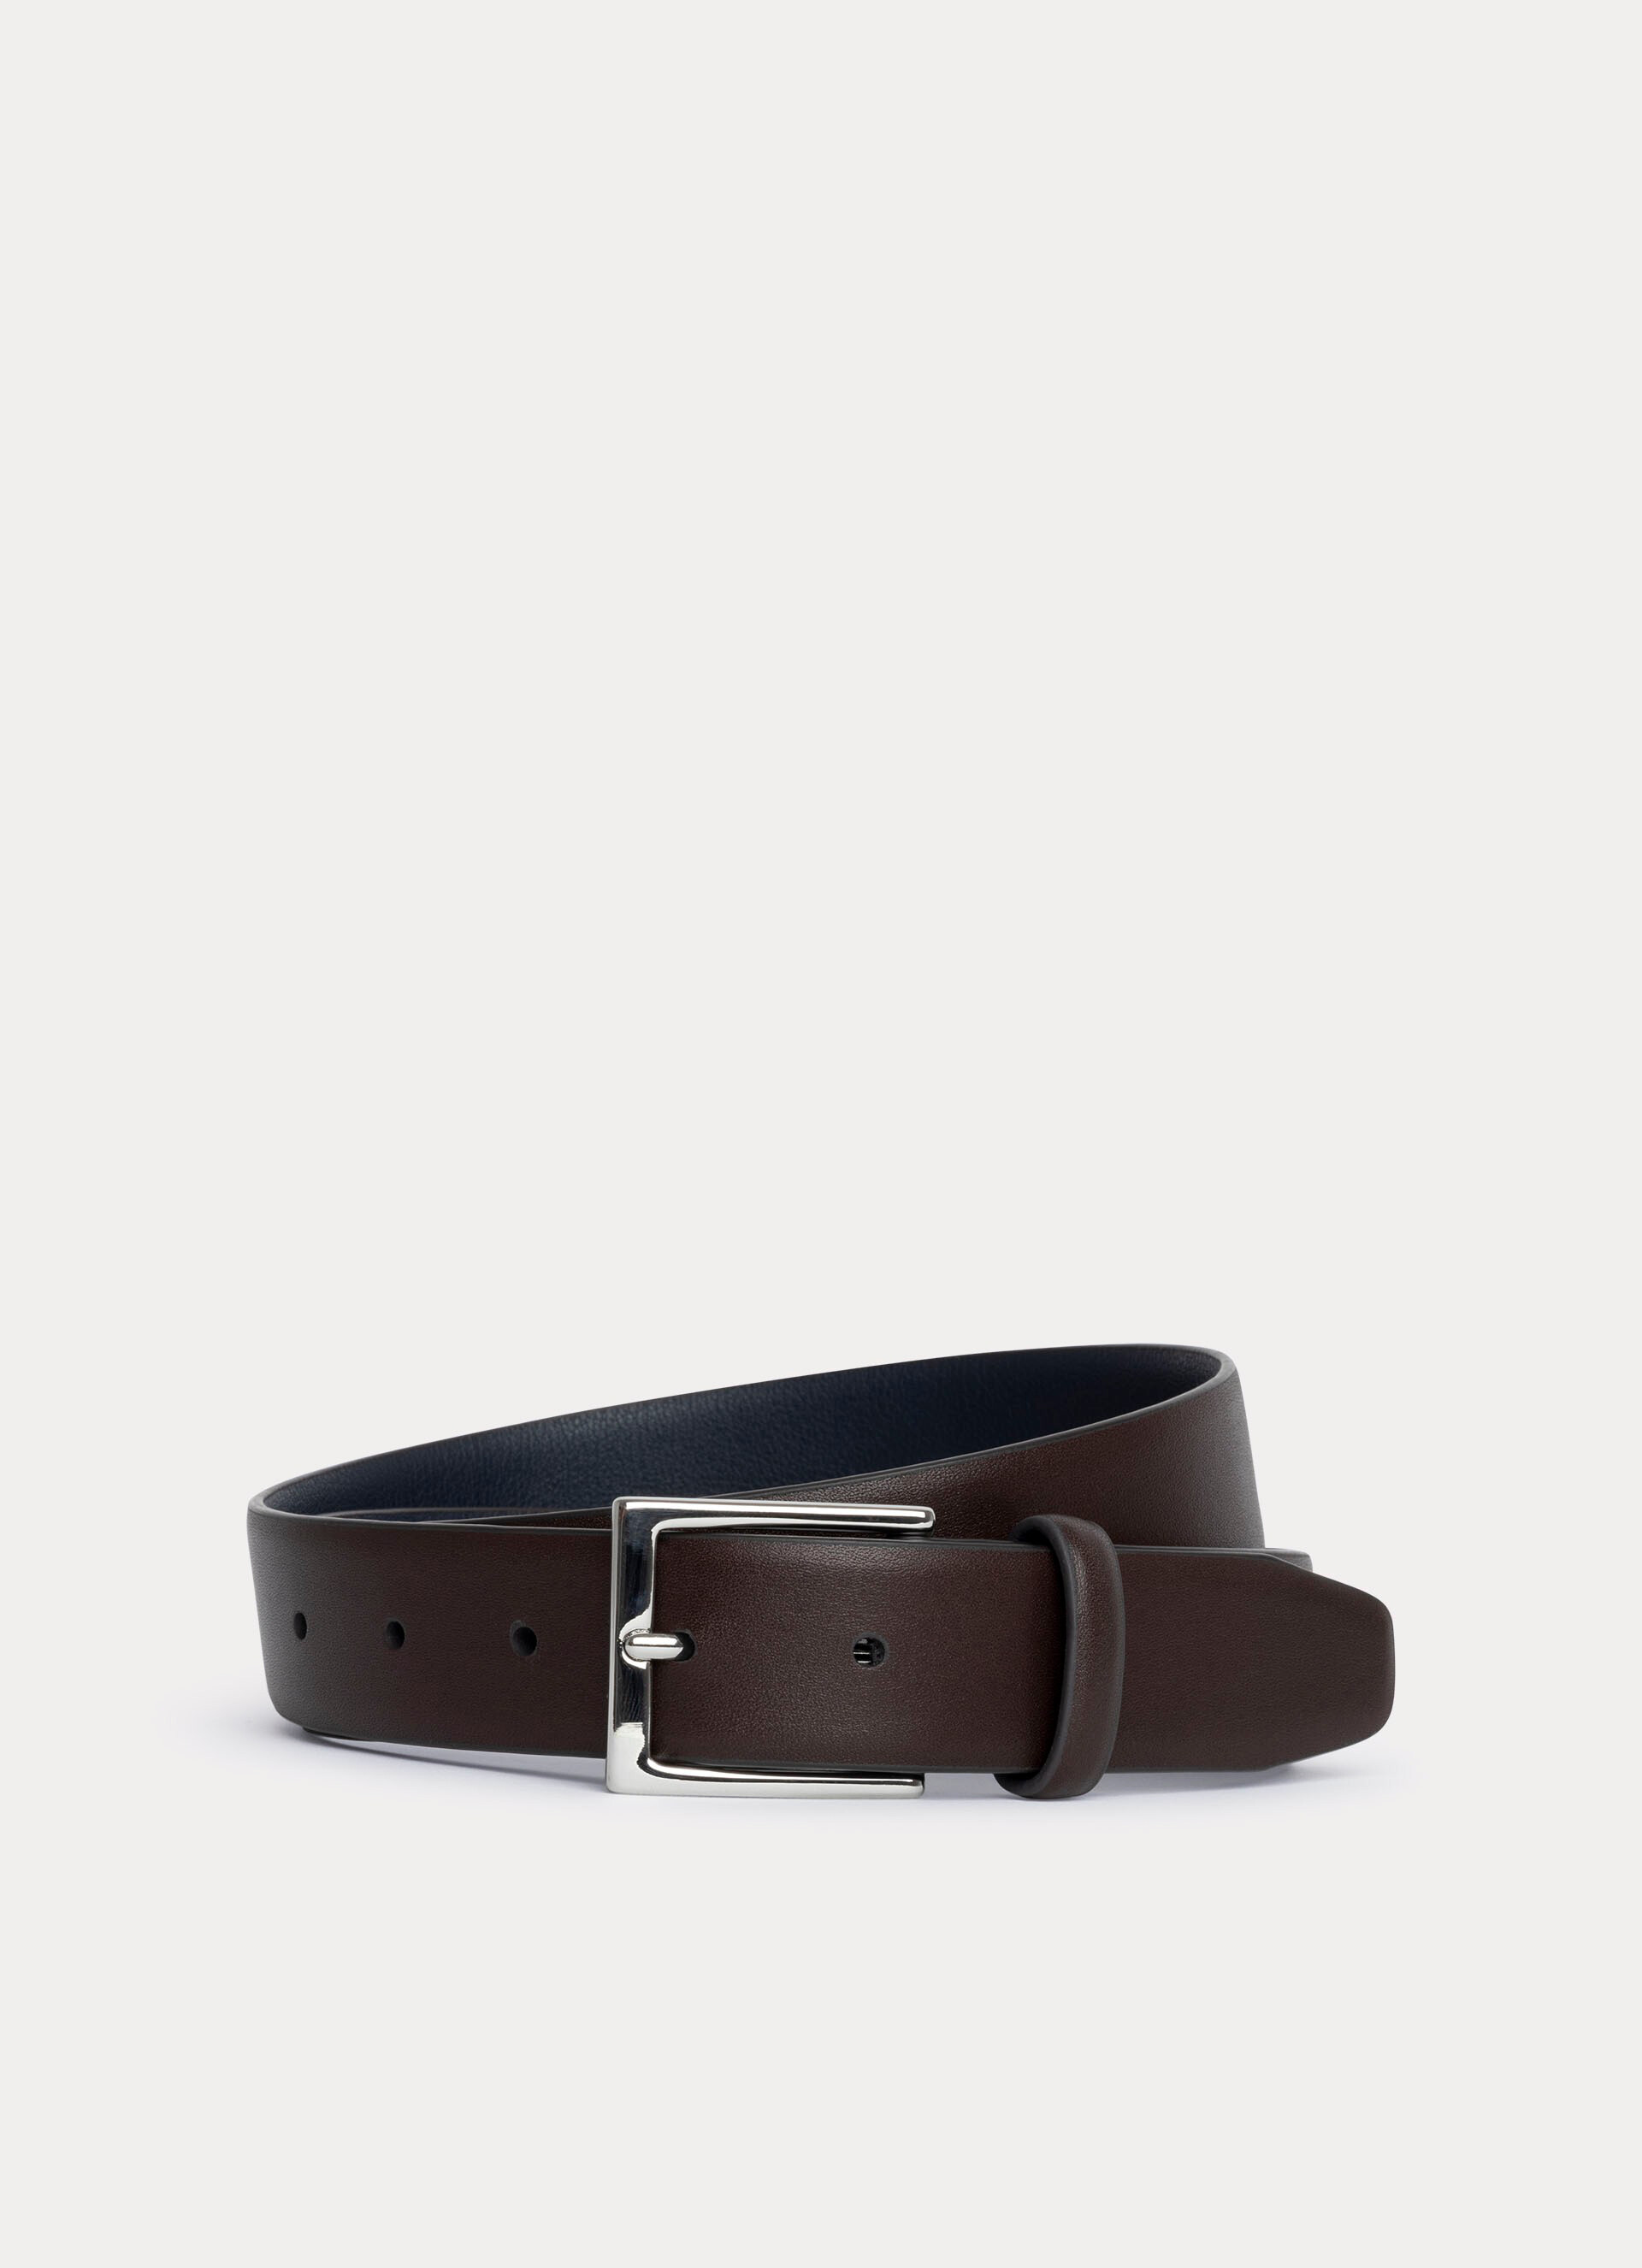 HACKETT LONDON Men Leather Formal Belt (28) by Myntra